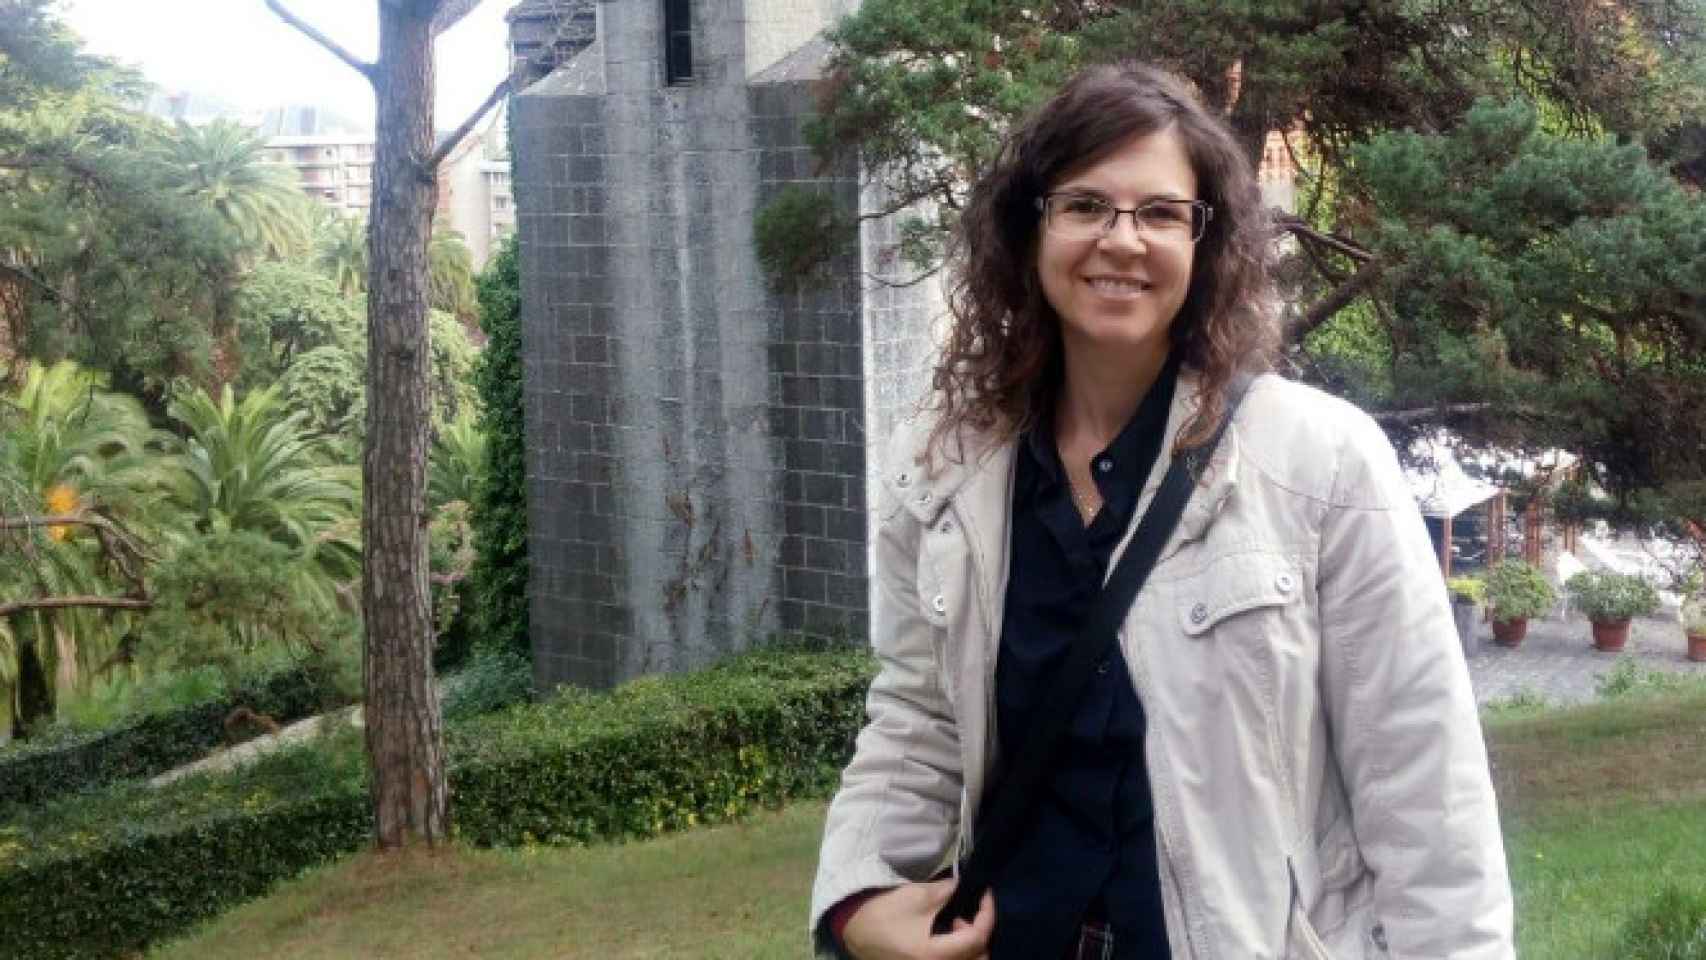 Imagen de Silvia López Gayubas, la mujer asesinada en Castro Urdiales.